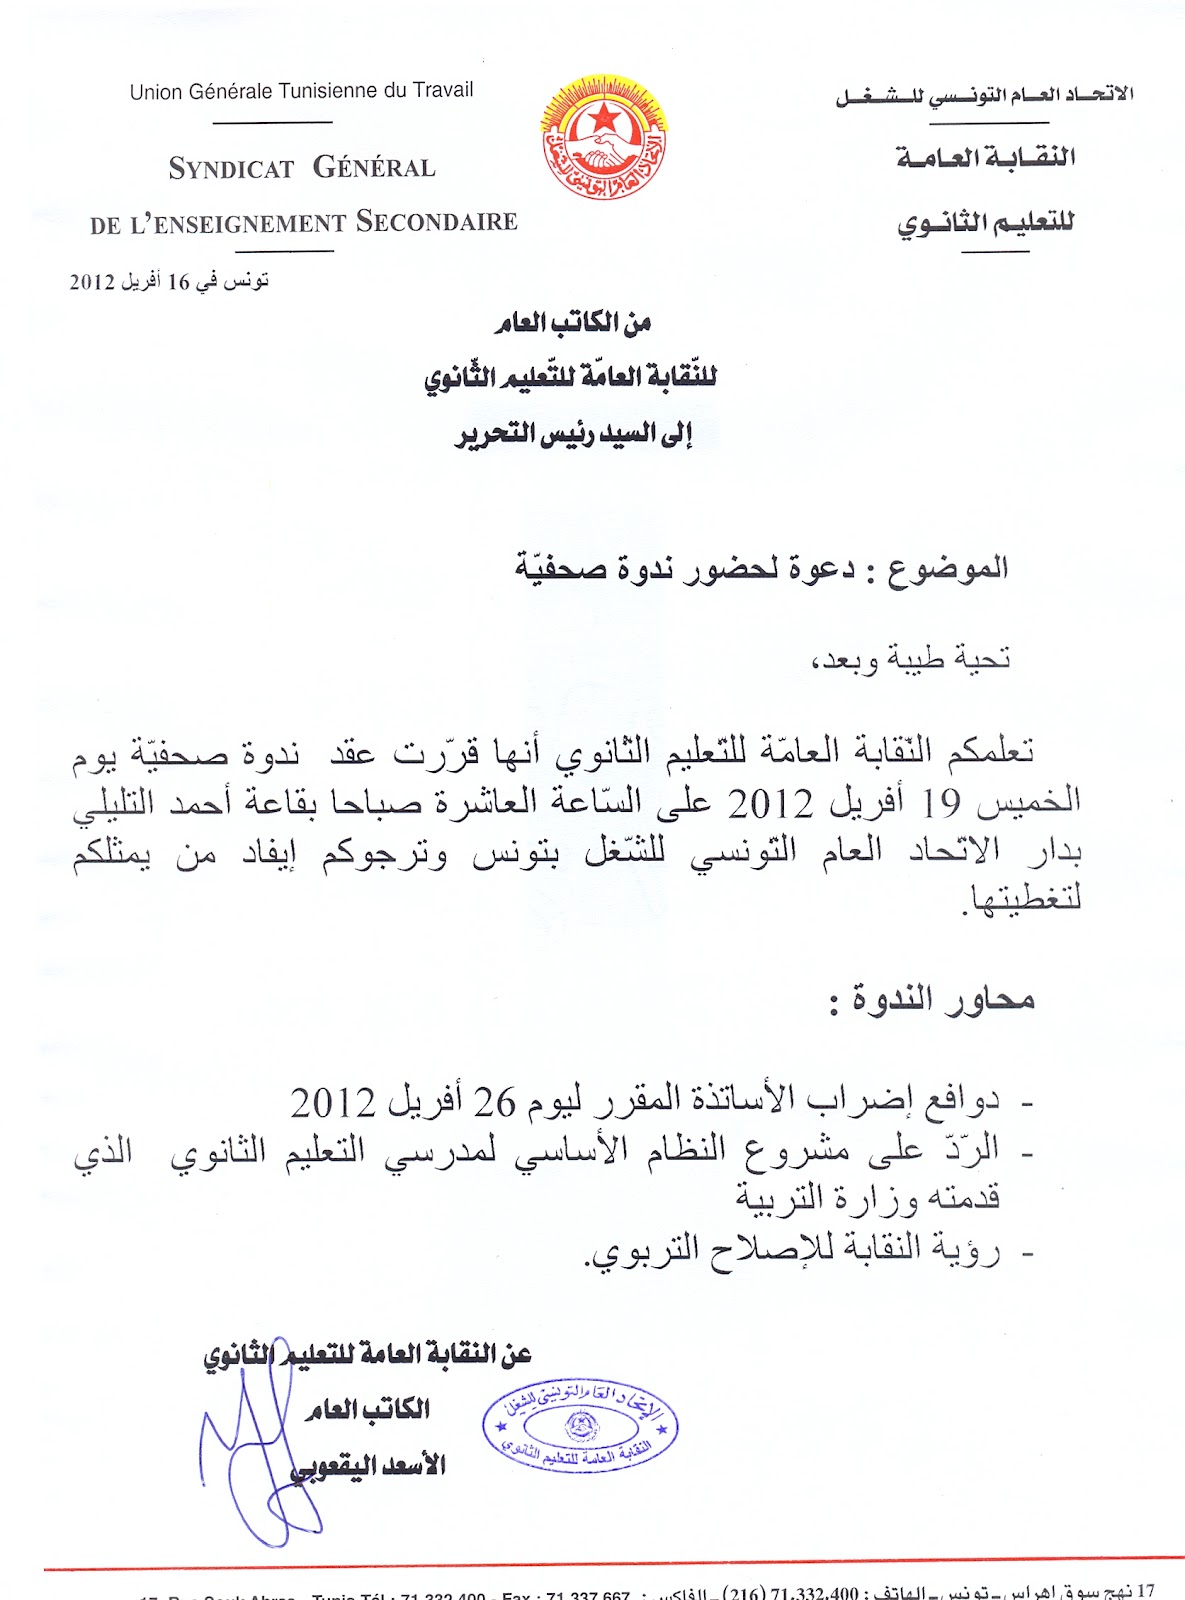 النّقابة العامّة للتعليم الثانوي تونس ص دعوة لحضور ندوة صحفية يوم 19